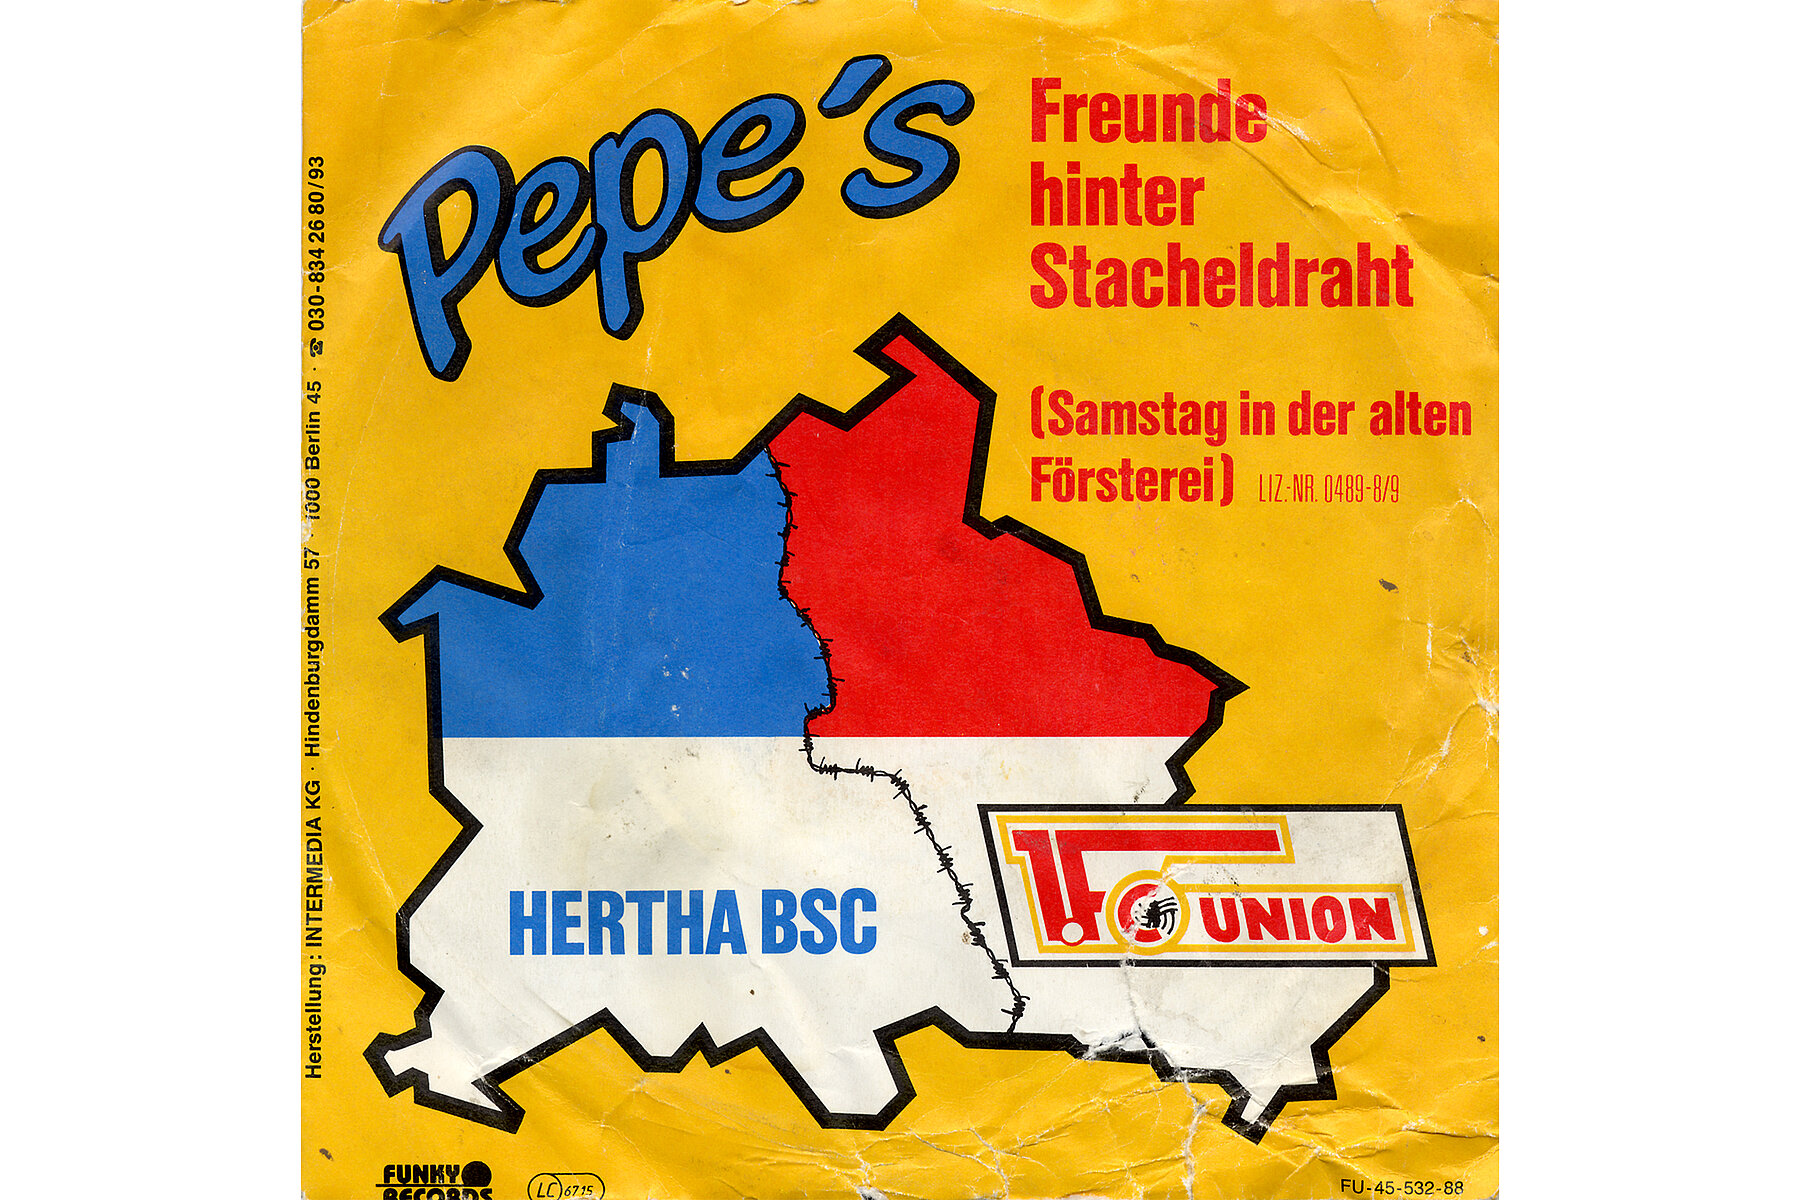 Ein gelbes Schallplatten-Cover auf dem steht: Pepe's. Freunde hinter Stacheldraht. Abgebildet ist ein Umriss des geteilten Berlins. Der Westen ist blau in den Farben Hertha ausgefüllt, der Osten rot in den Farben von Union.